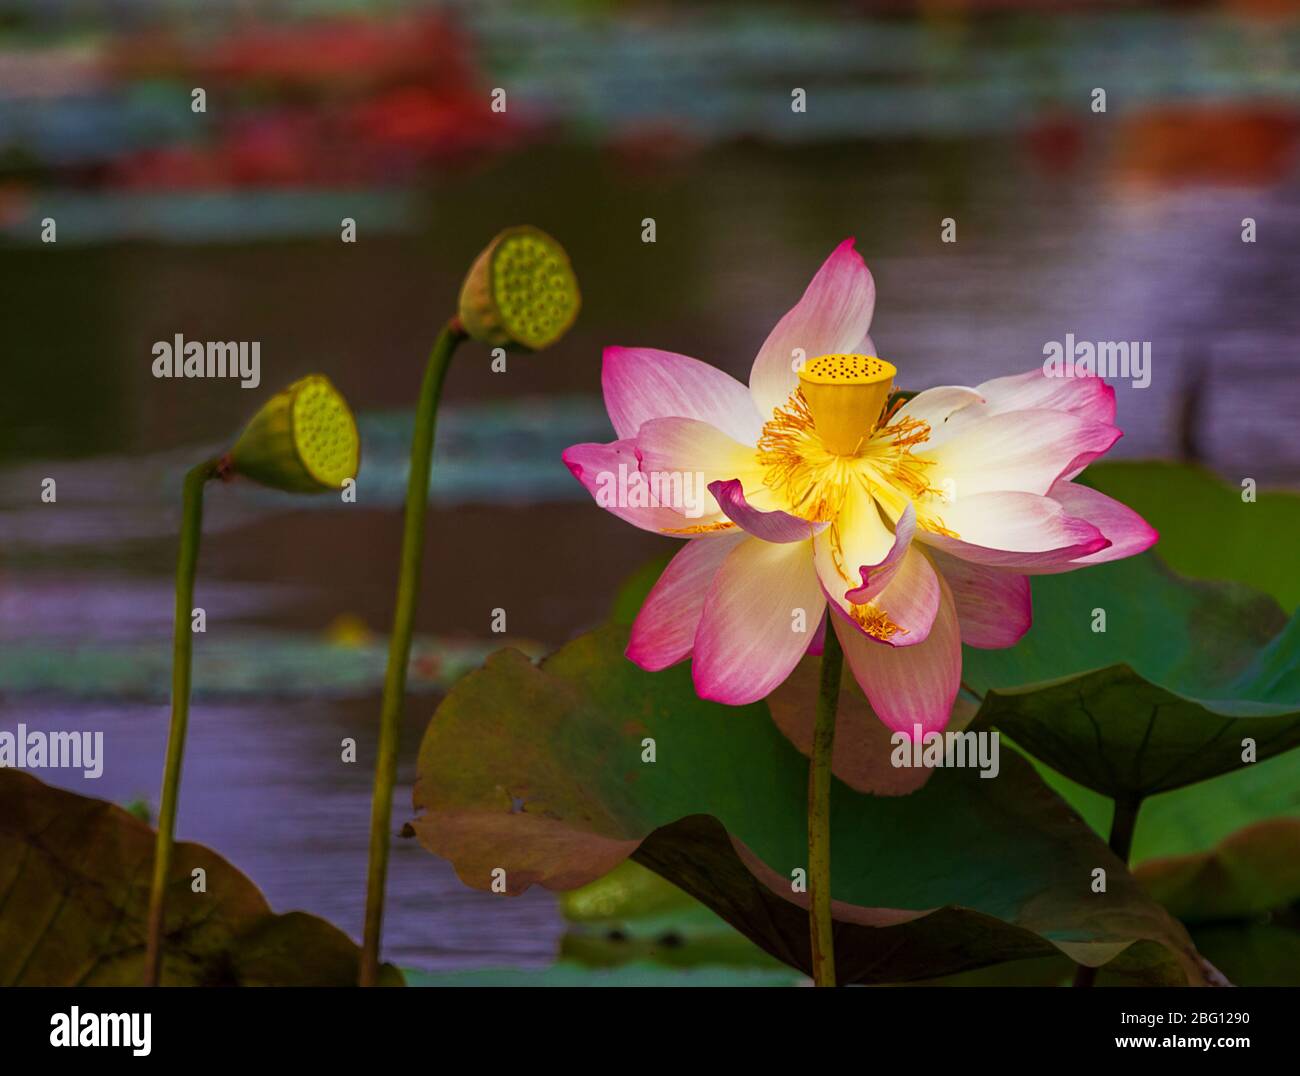 Der indische Lotus oder Heilige Lotus Nelumbo nucifera ist ein aquatischer Organismus, der als Lotusblume bezeichnet wird. Eine Pflanze, die oft als Seerose bezeichnet wird Stockfoto